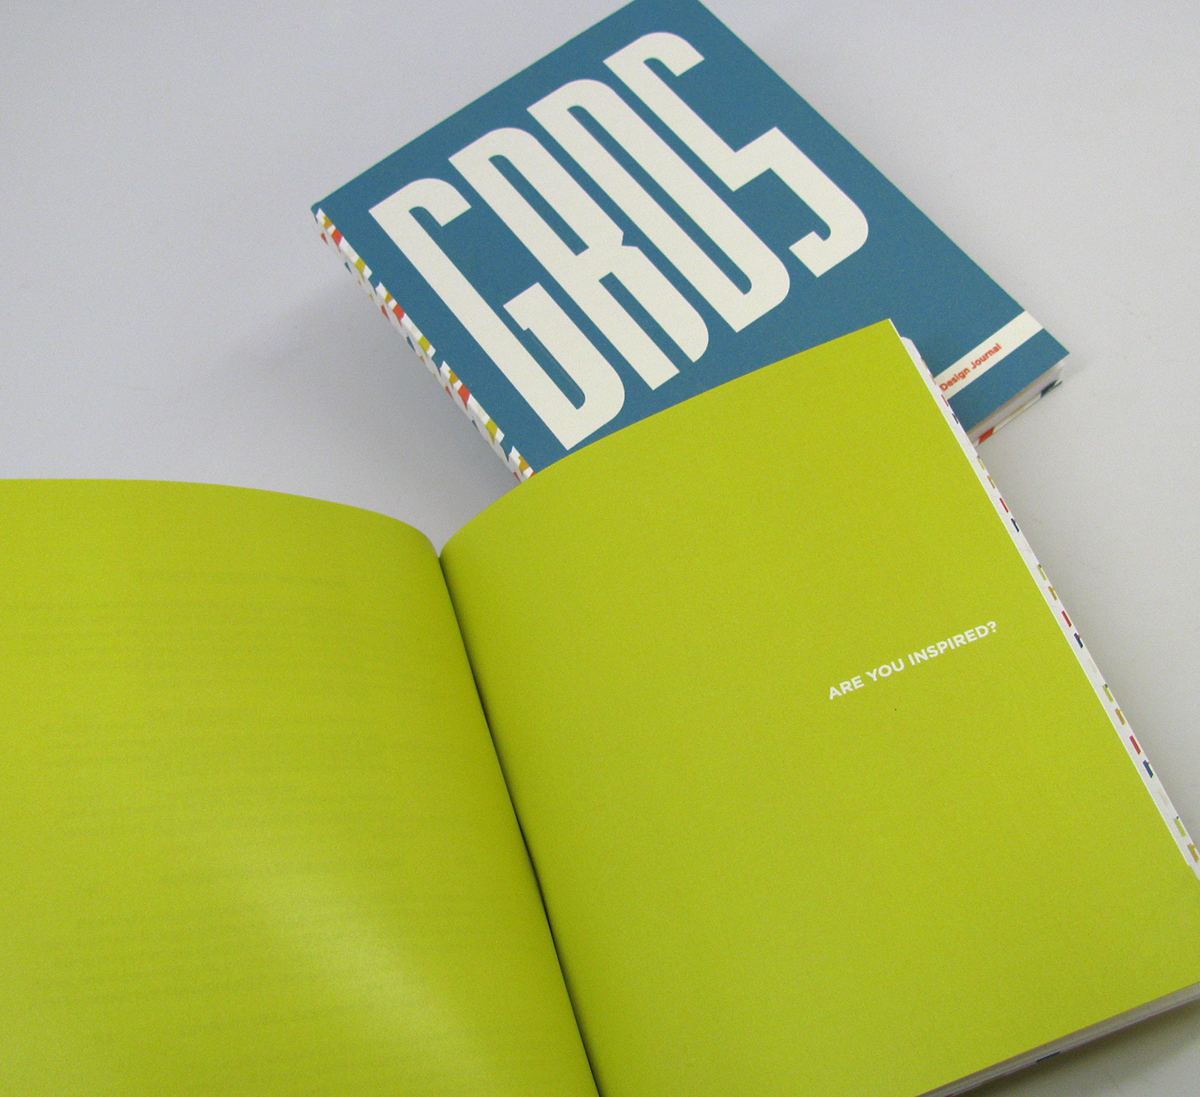 information design book design publication design